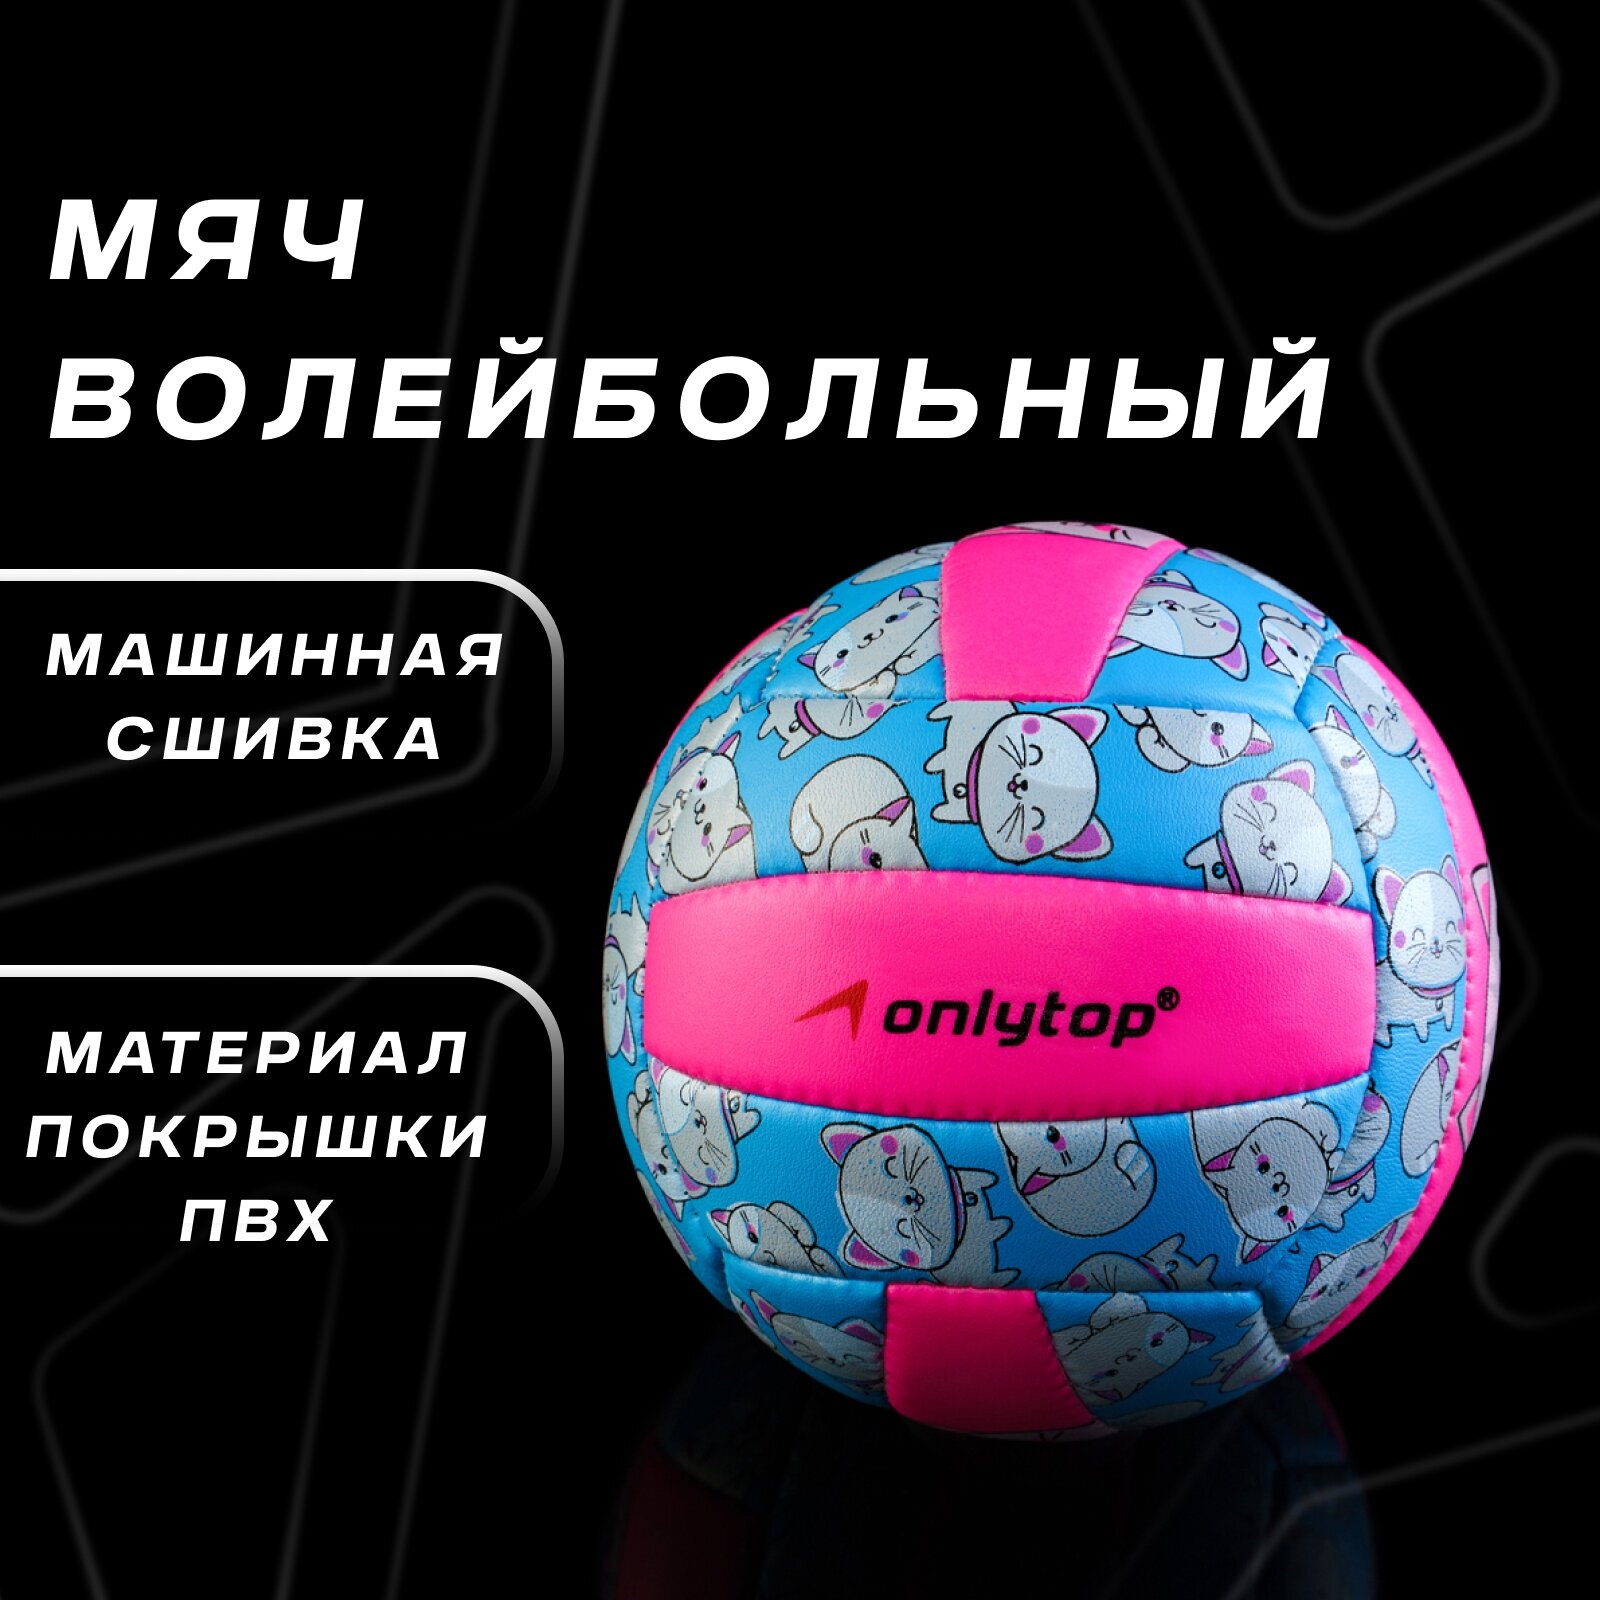 Мяч волейбольный ONLYTOP «Кошечка», ПВХ, машинная сшивка, 18 панелей, размер 2, цвет голубой, розовый